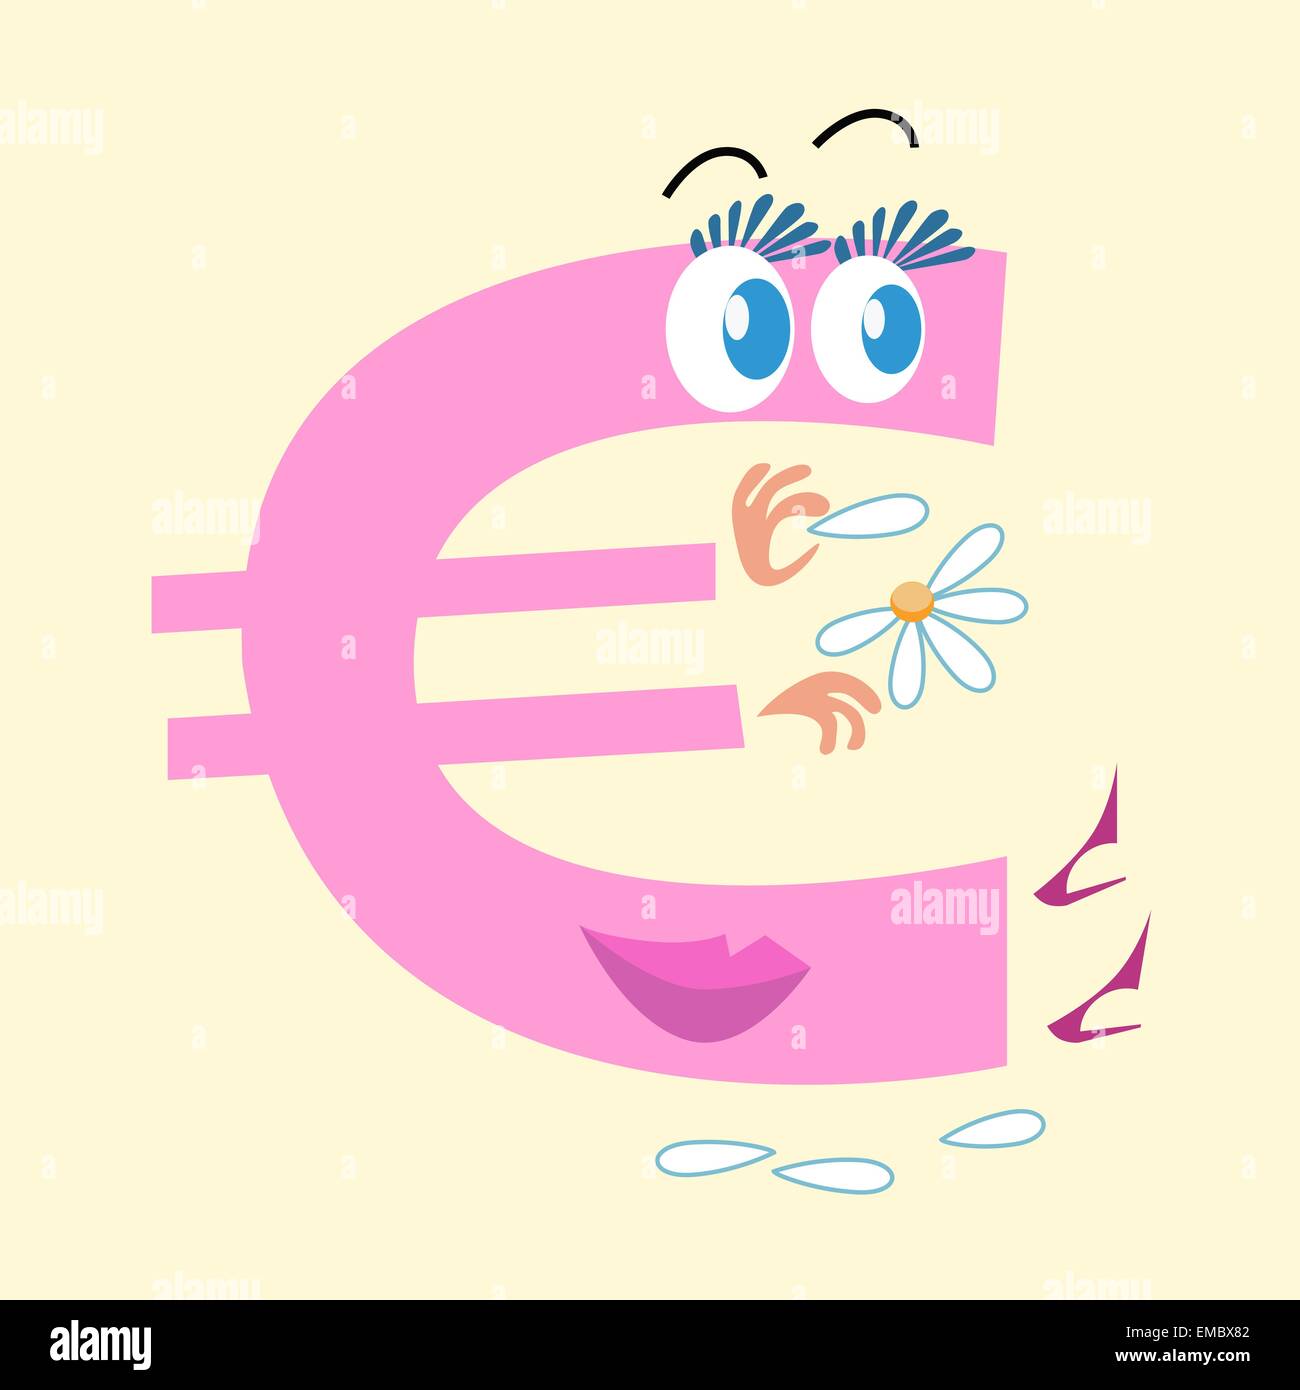 Le symbole de l'Euro est la monnaie nationale de l'Europe. Le caractère de l'Euro sign se demande sur la Marguerite l'aimer ou pas. Business Illustration de Vecteur